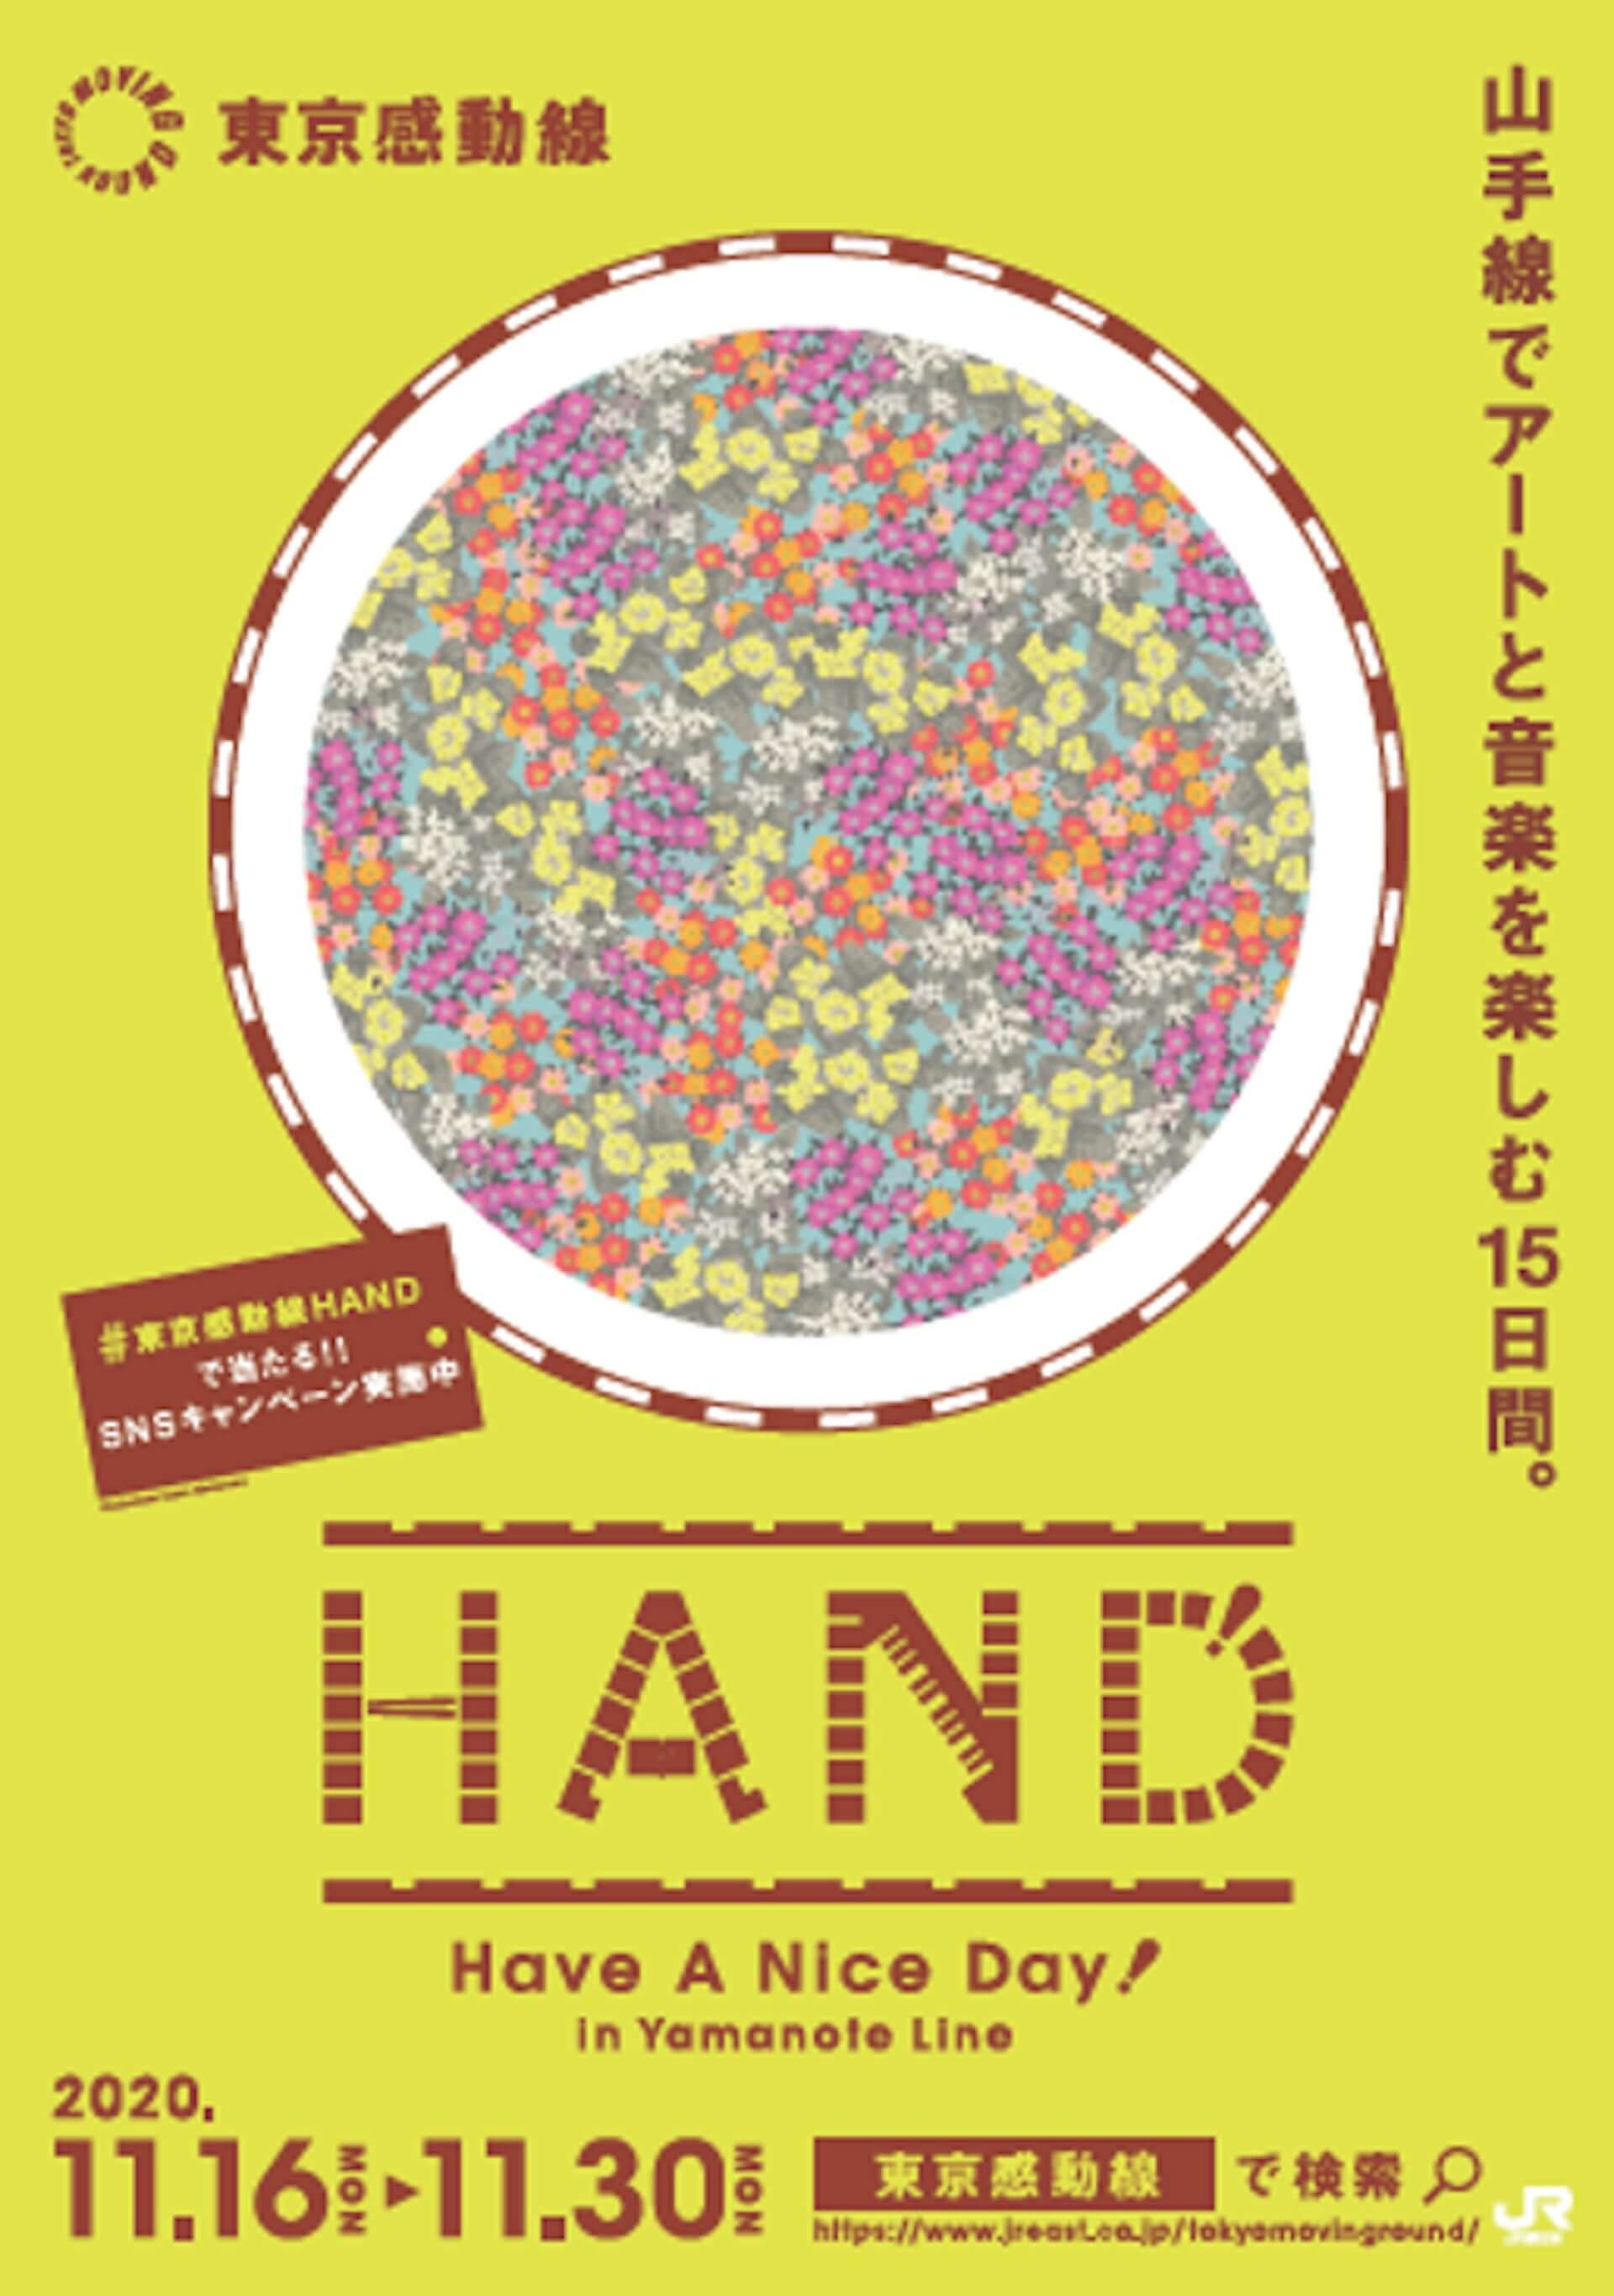 HAND！